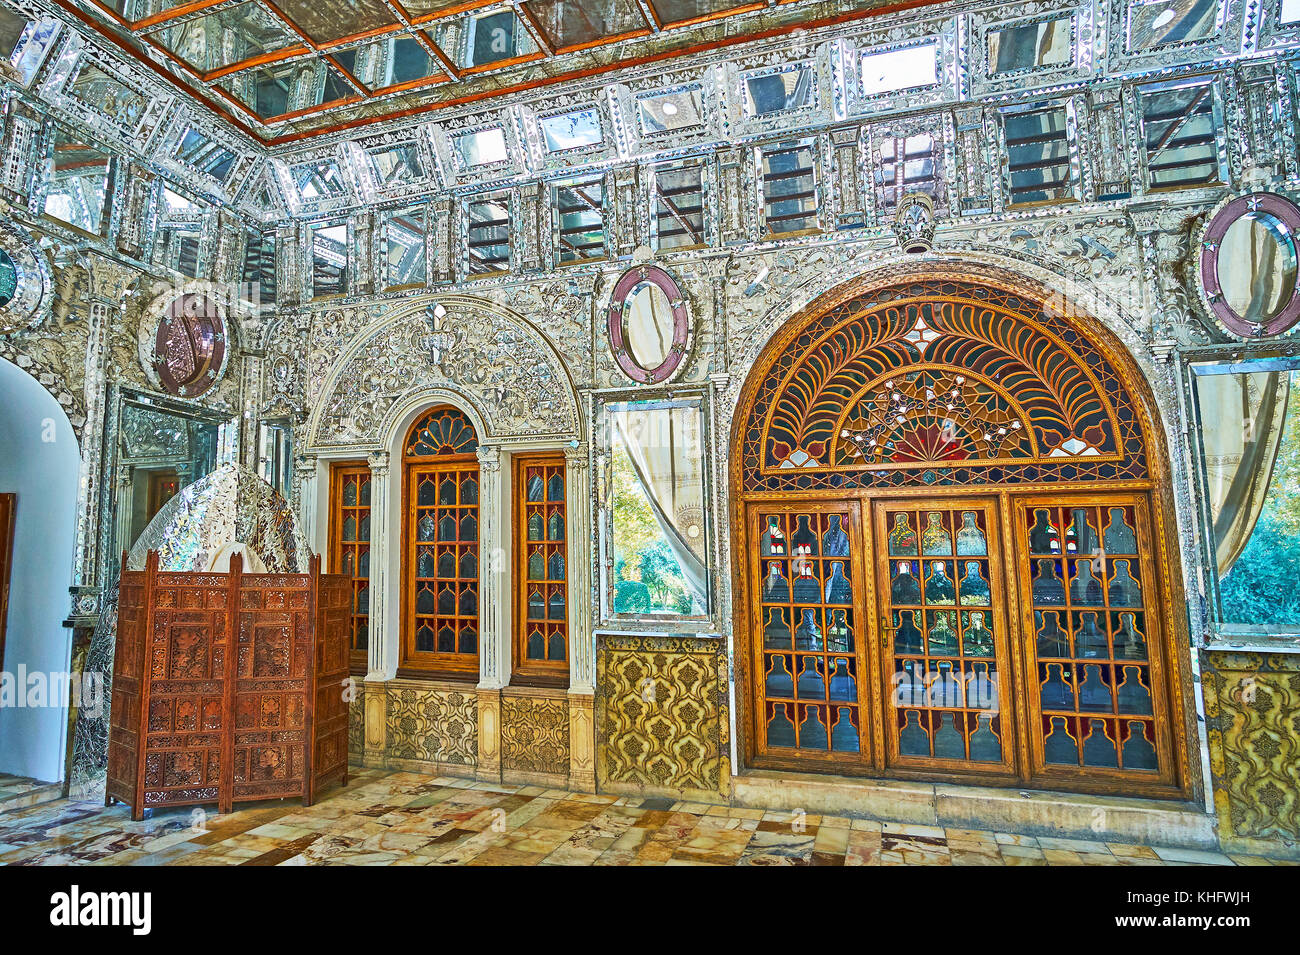 Teheran, Iran - Oktober 11, 2017: Das Gebäude der Sonne (shams-ol-emareh) Der golestan Palace verfügt über schöne Spiegel Terrasse, im traditionellen dekoriert Pro Stockfoto